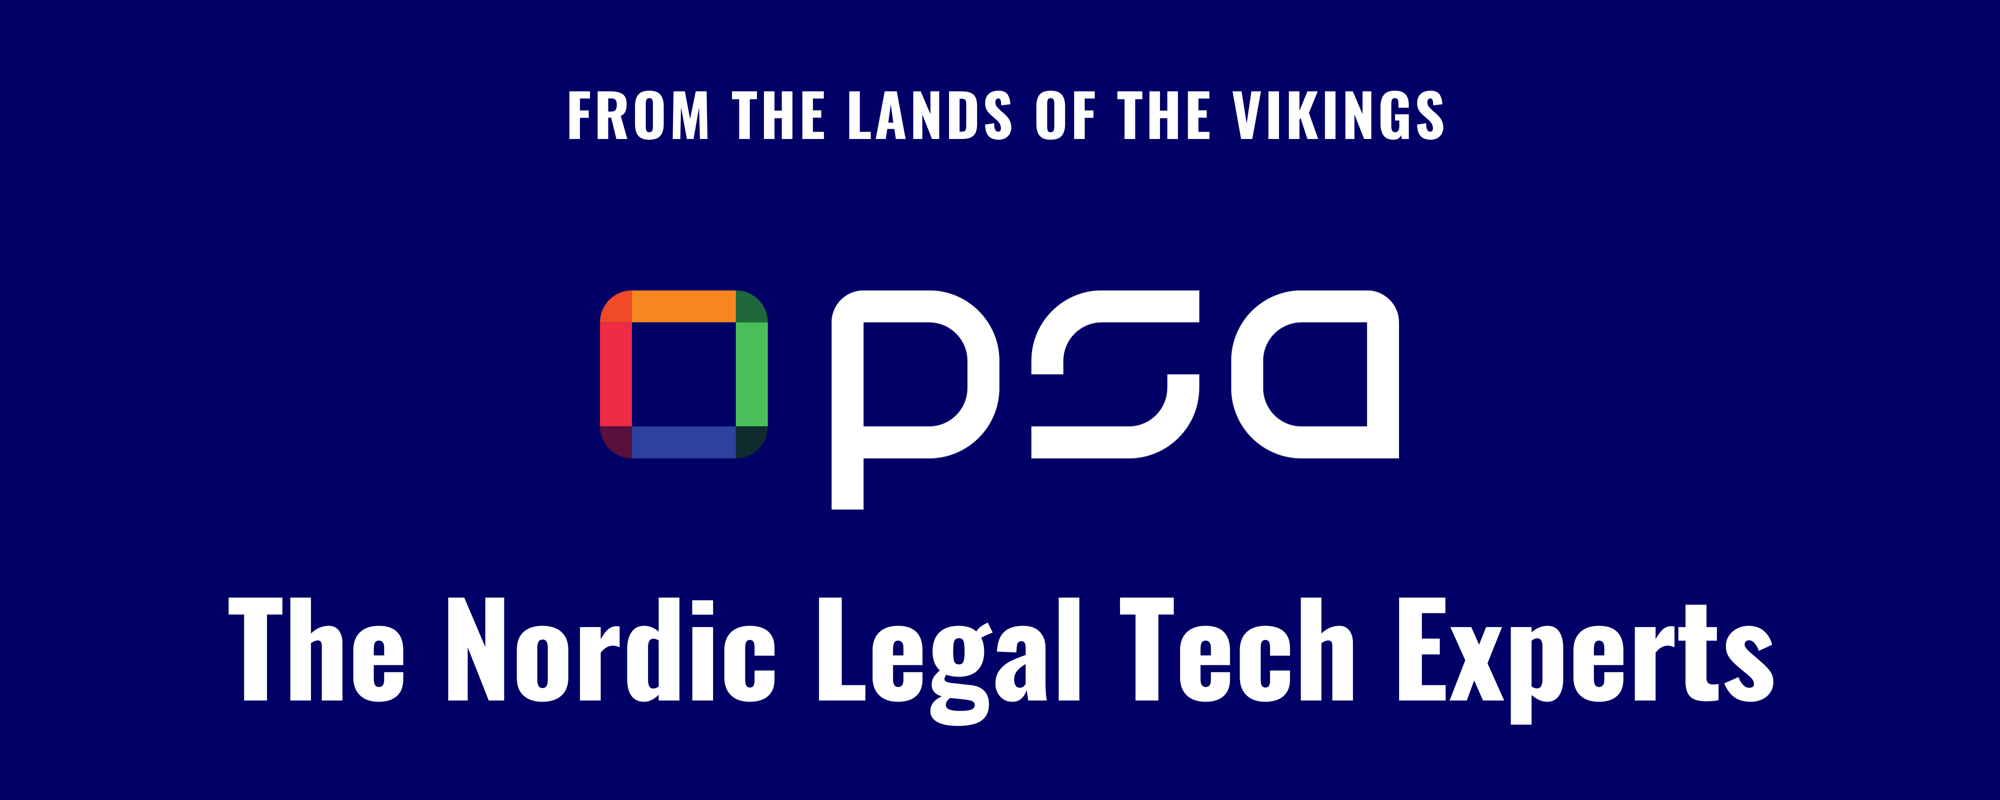 PSA Vikings - Legal Tech Experts